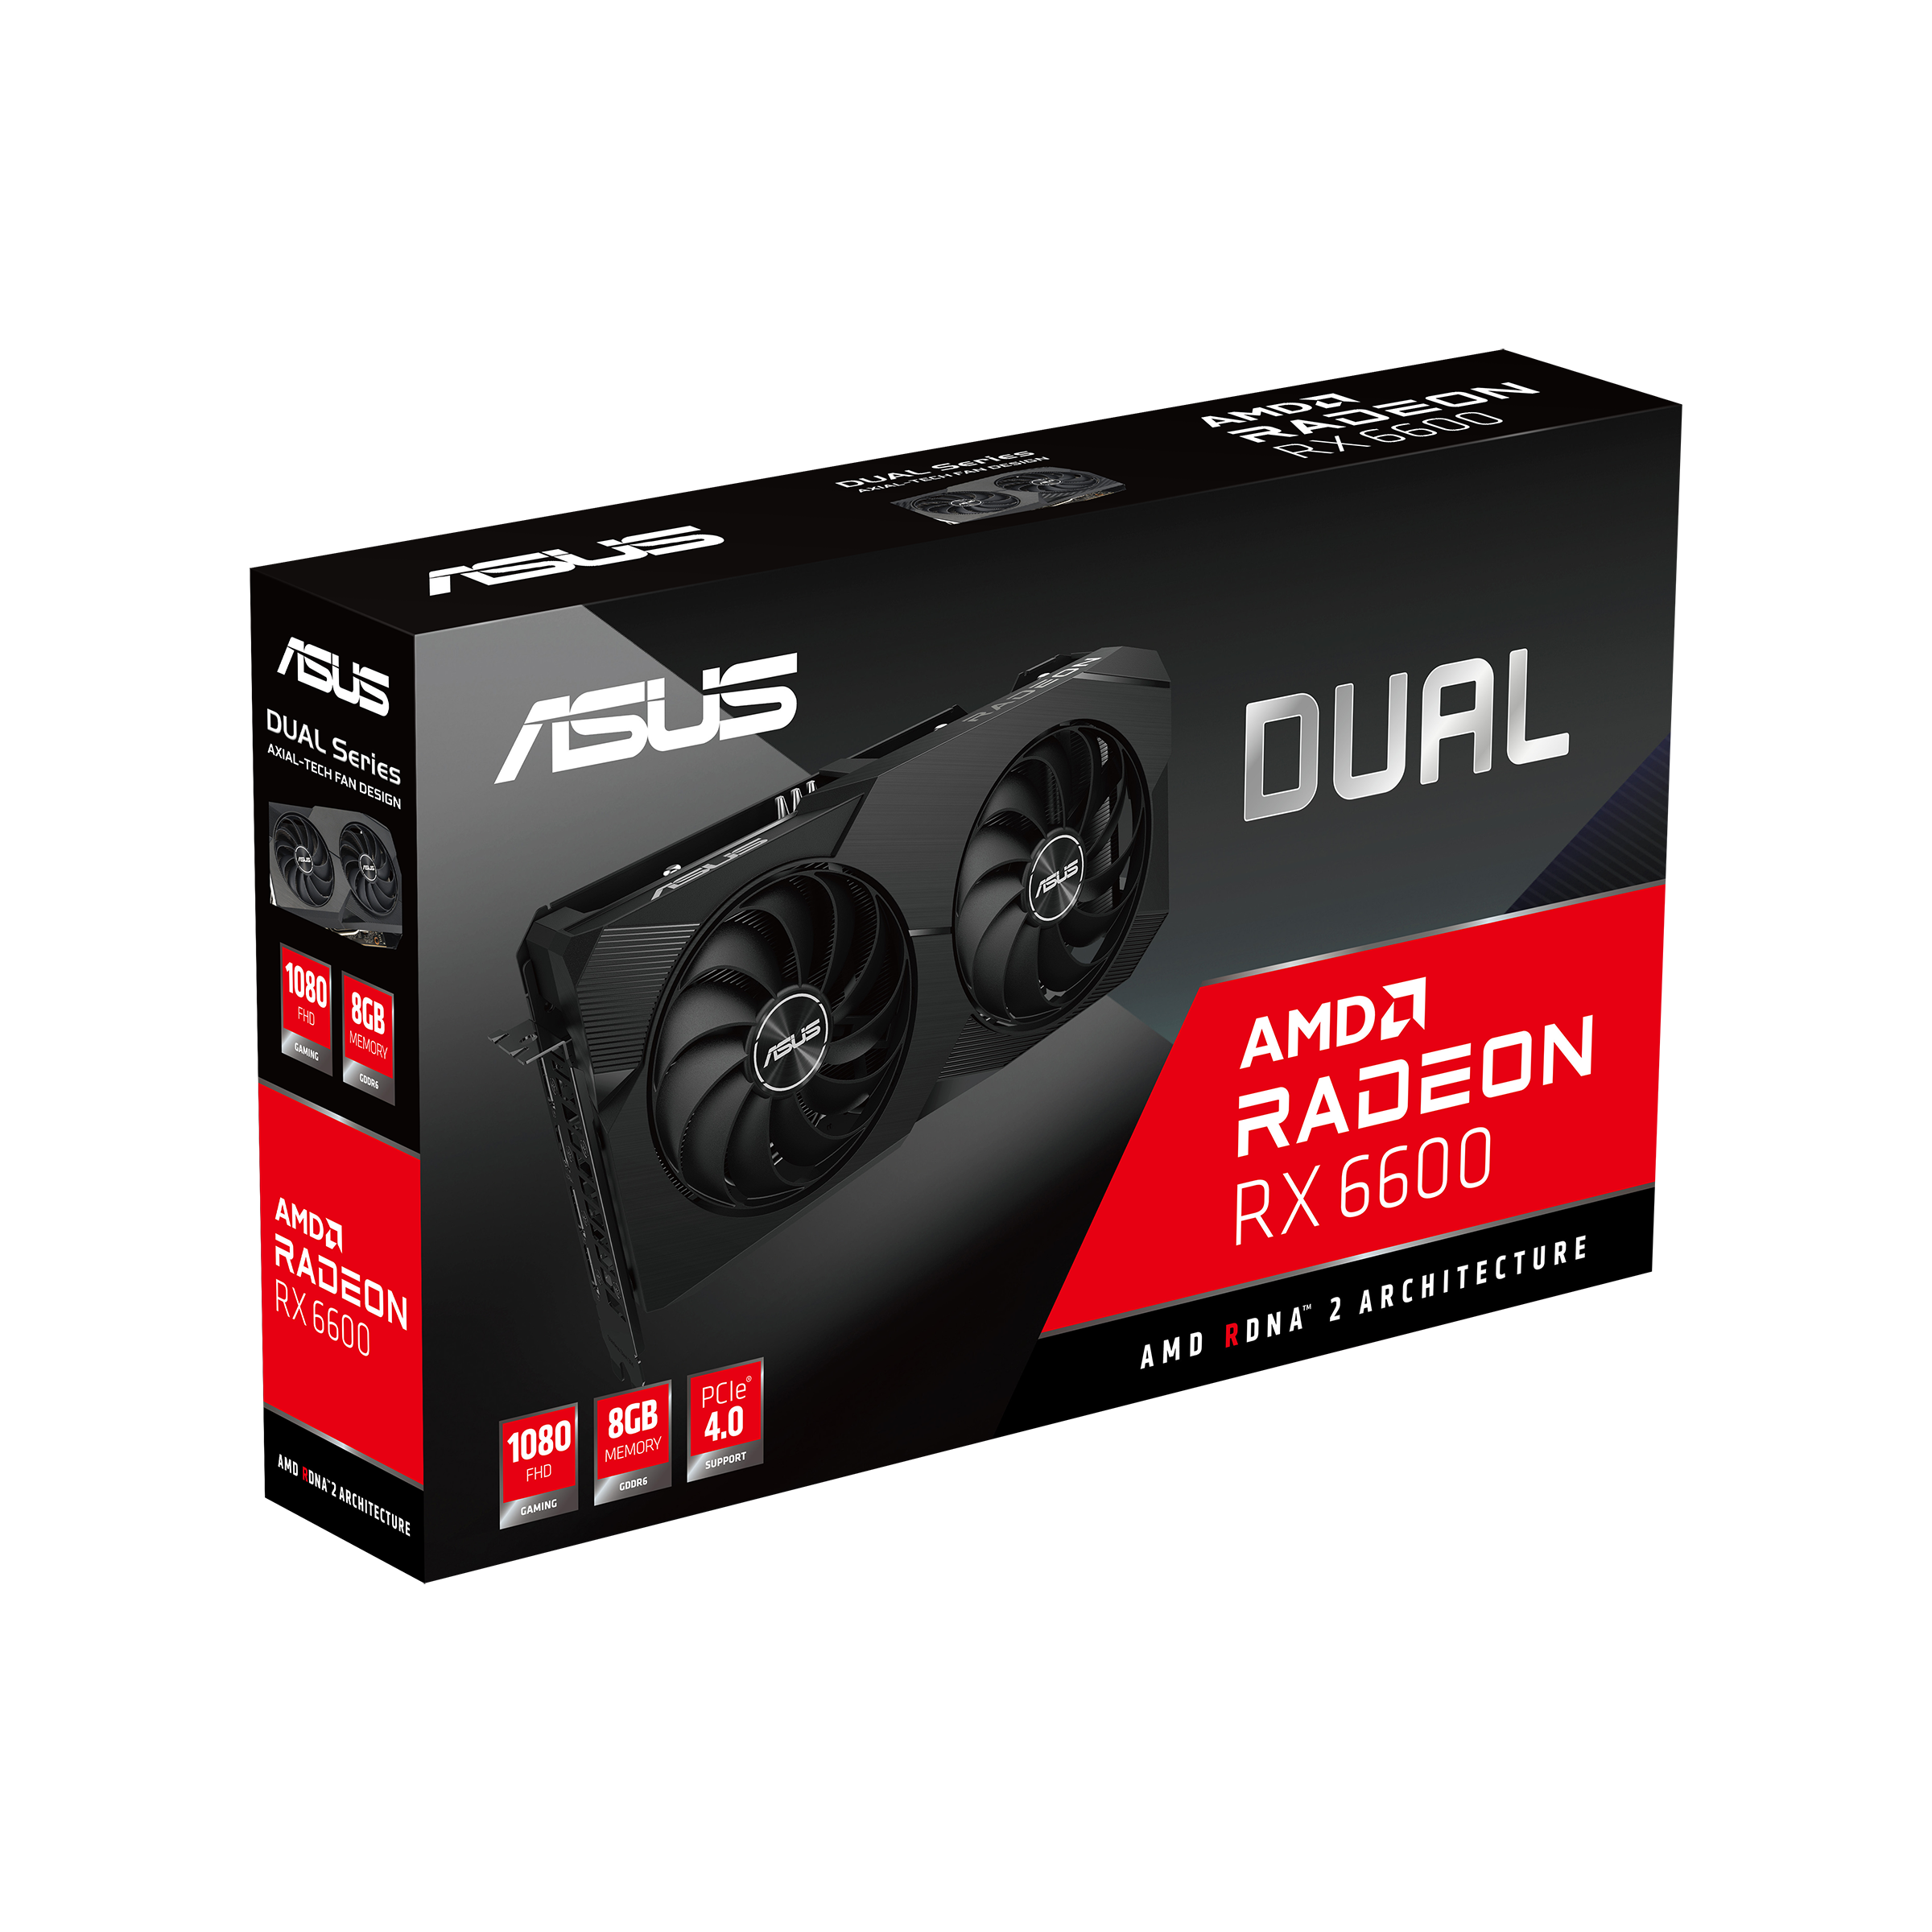 適当な価格 (値段応相談)ASUS Radeon RX 6600 グラフィックボード